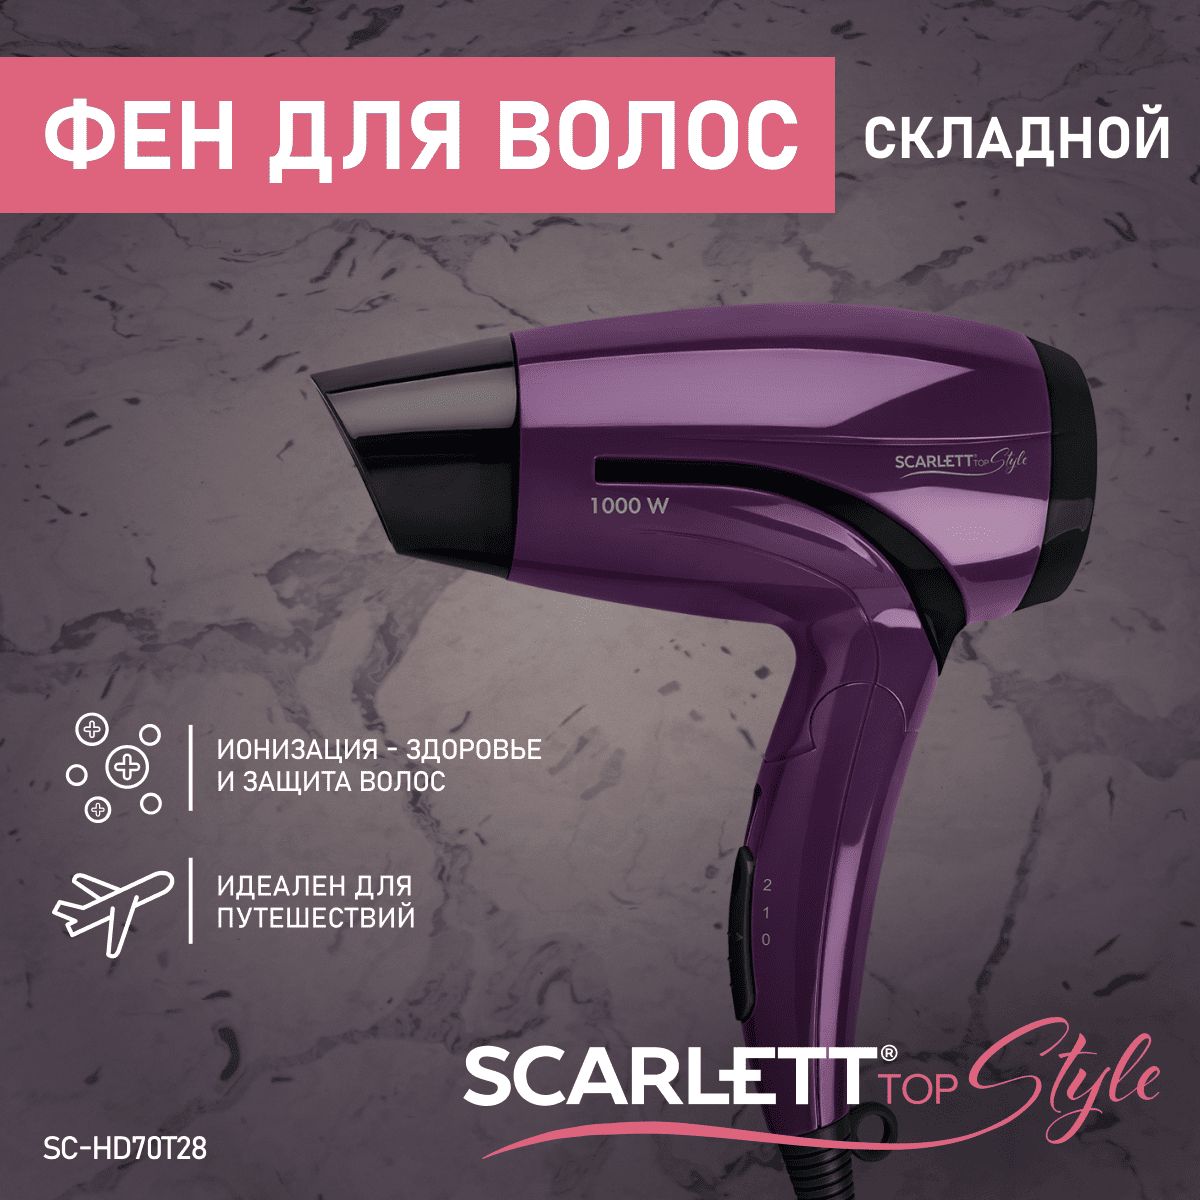 Фен Scarlett SC-HD70T28 1200 Вт фиолетовый фен scarlett sc hd70t28 1200 вт фиолетовый